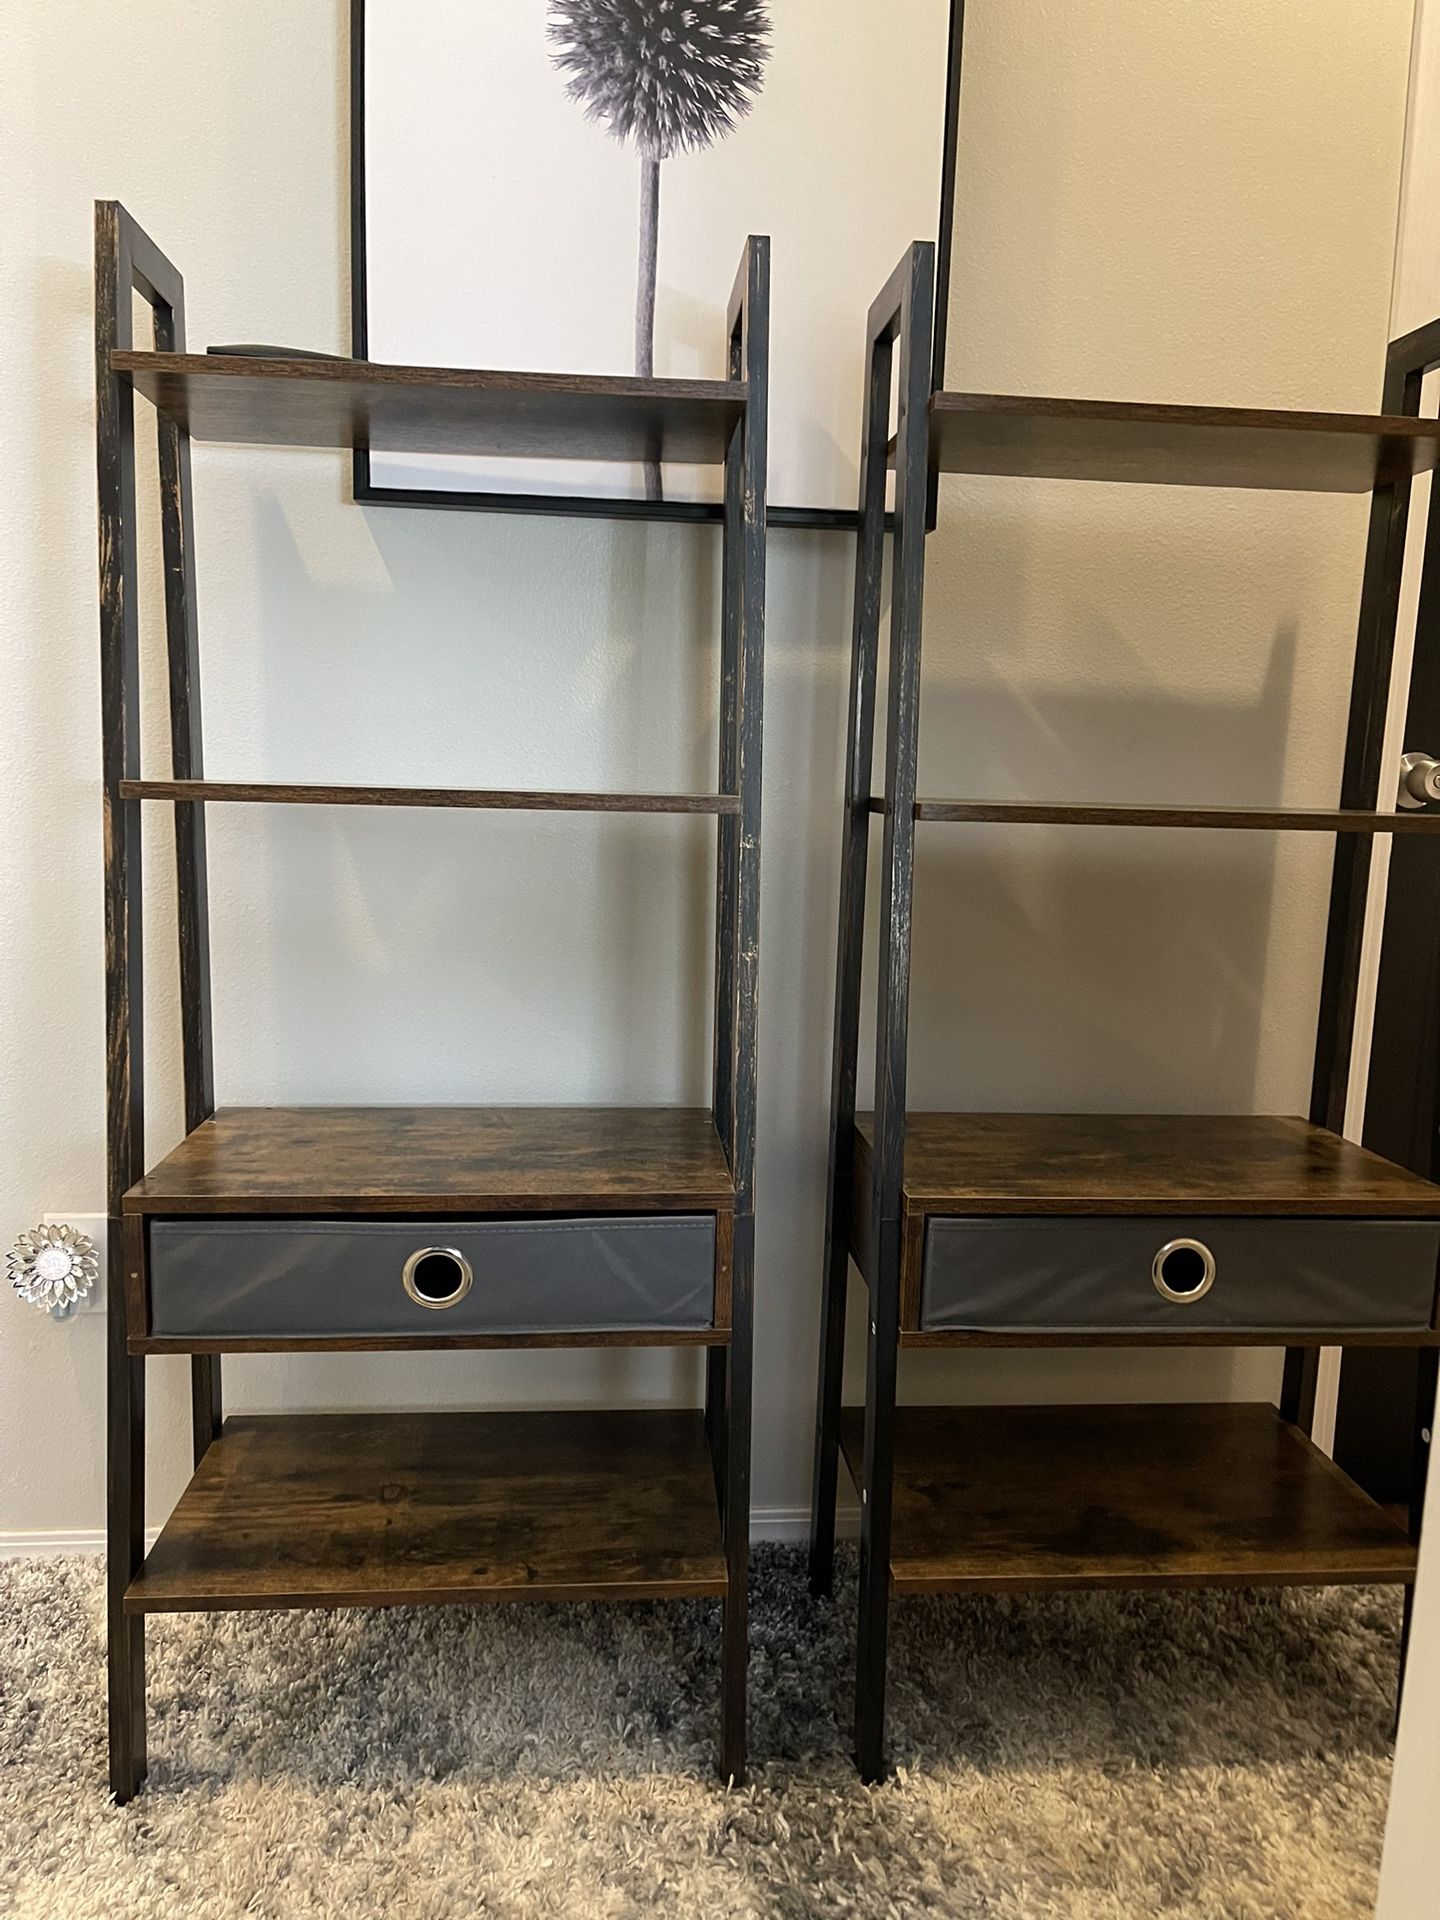 Pending - Freestanding Shelves